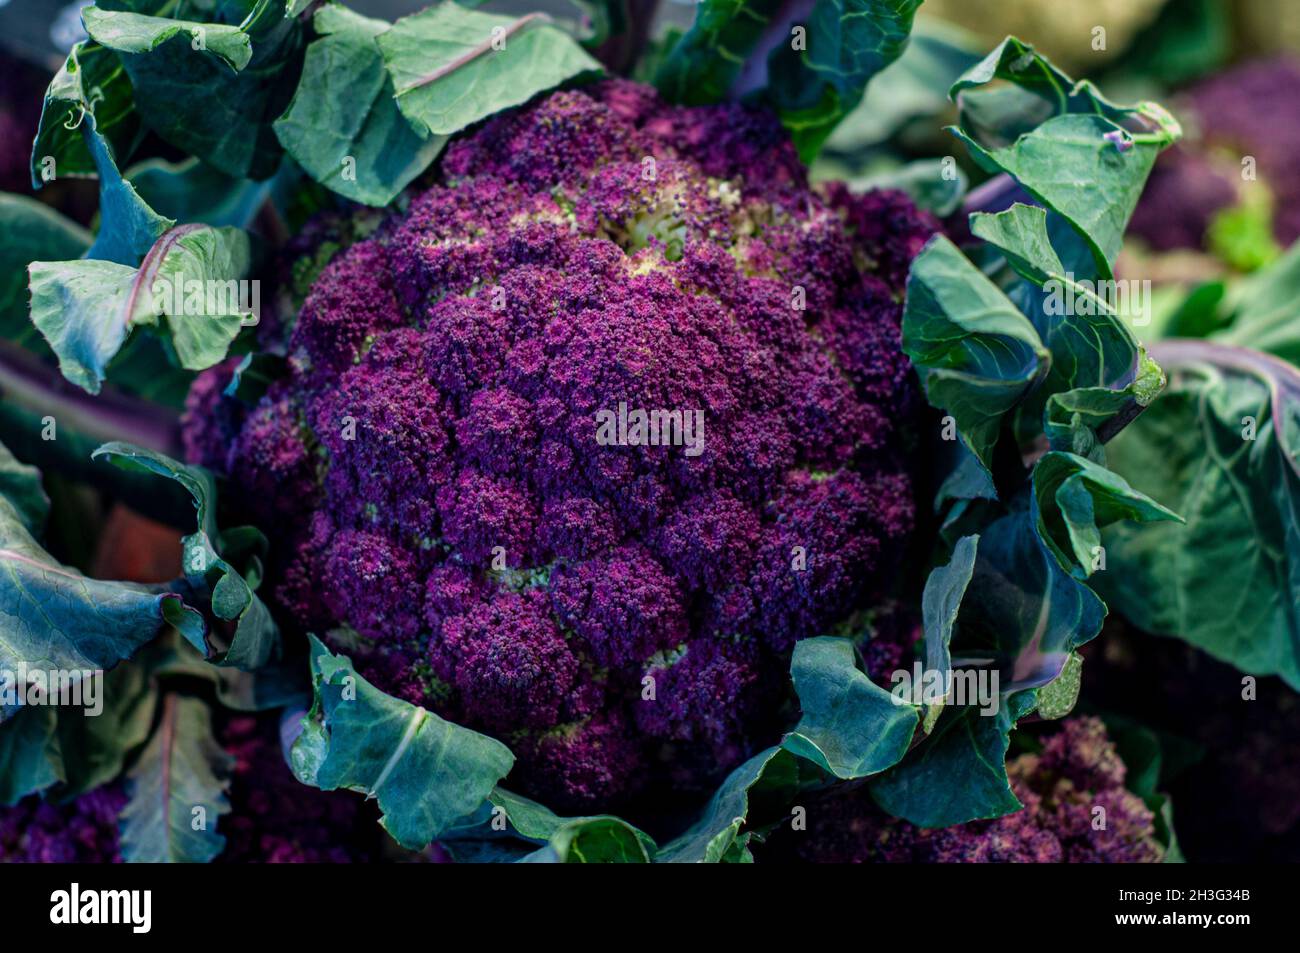 Mercat de Sant Josep, Purple cauliflower at a stall in the Boqueria market in Barcelona, Catalonia, Spain Stock Photo